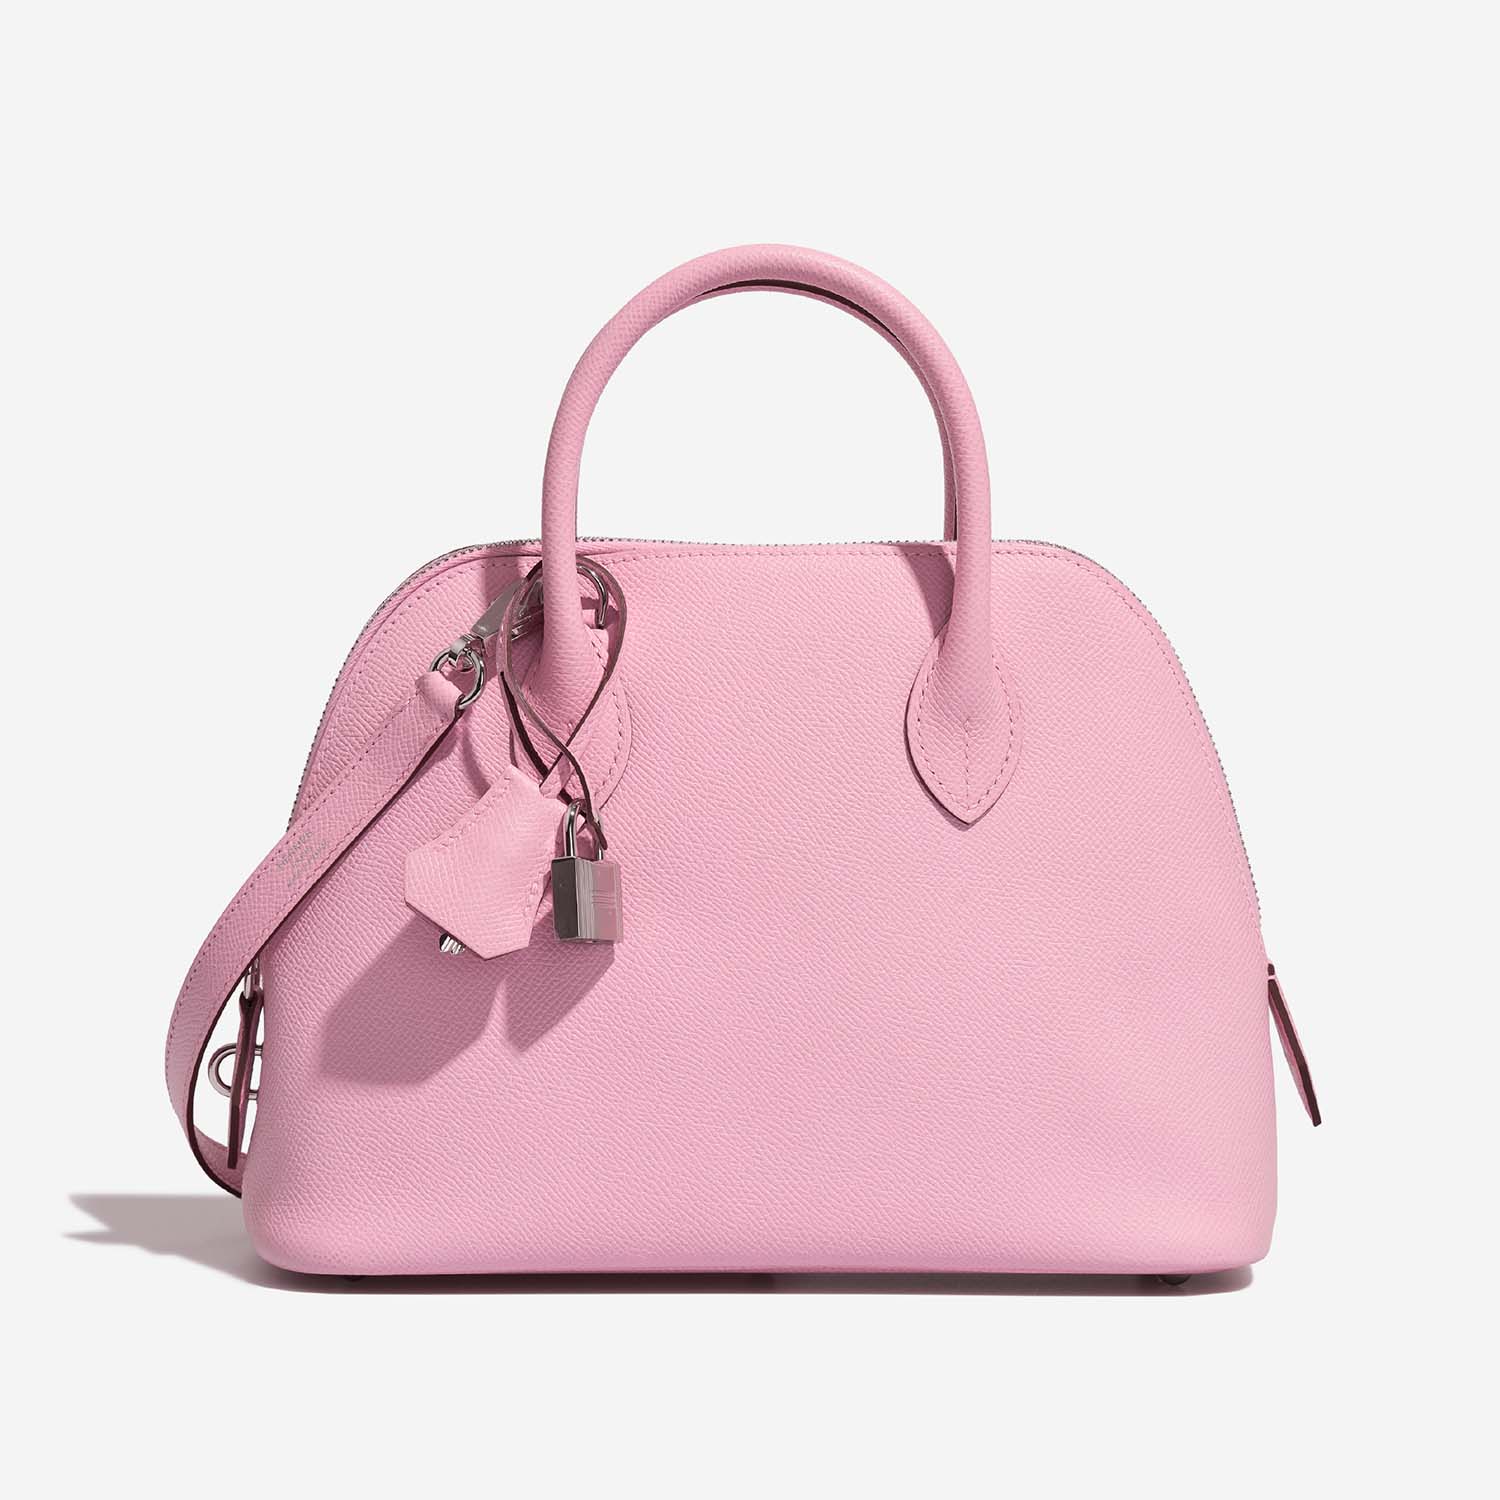 Hermès Bolide 25 MauveSylvestre Front | Verkaufen Sie Ihre Designertasche auf Saclab.com